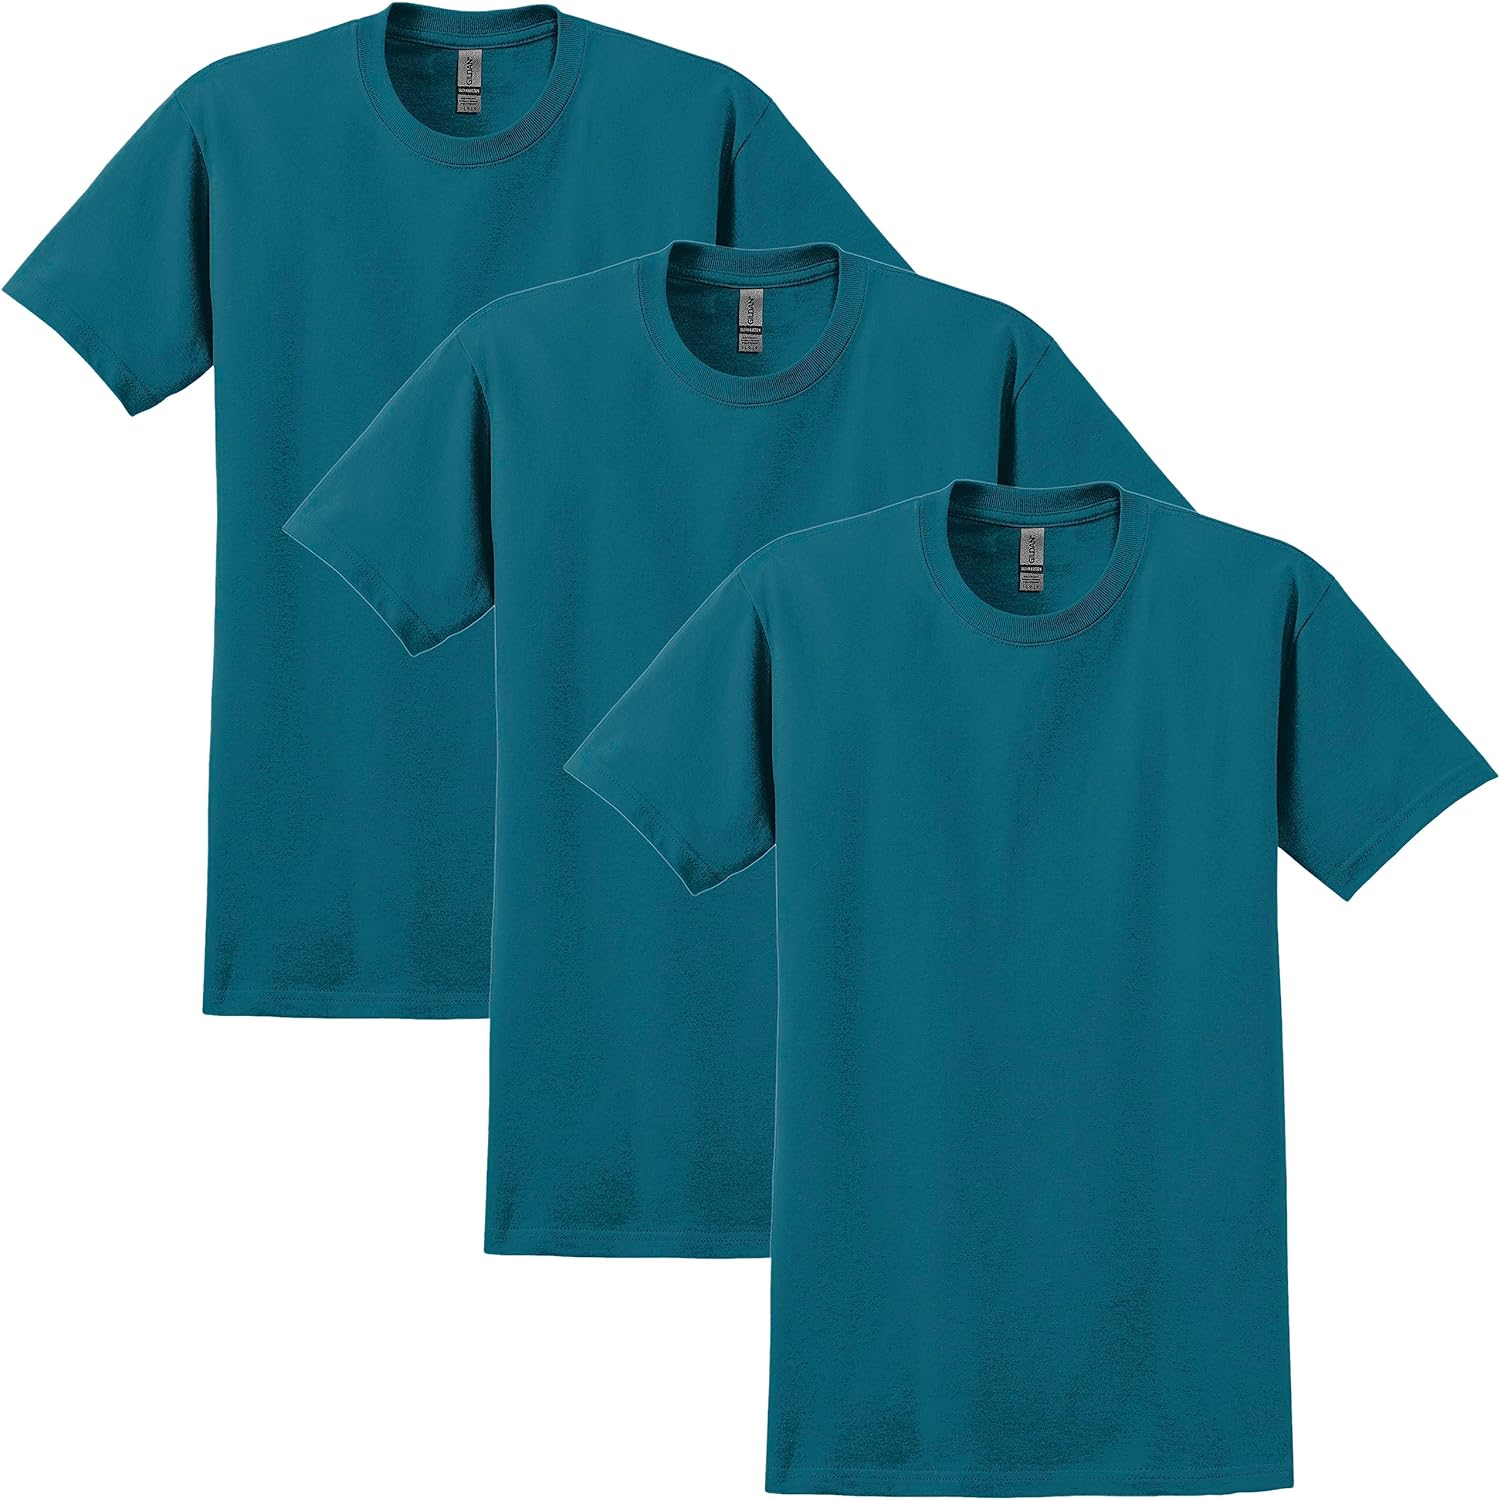 Gildan Adult Ultra Cotton Short Sleeve T-Shirt - Pack of 3